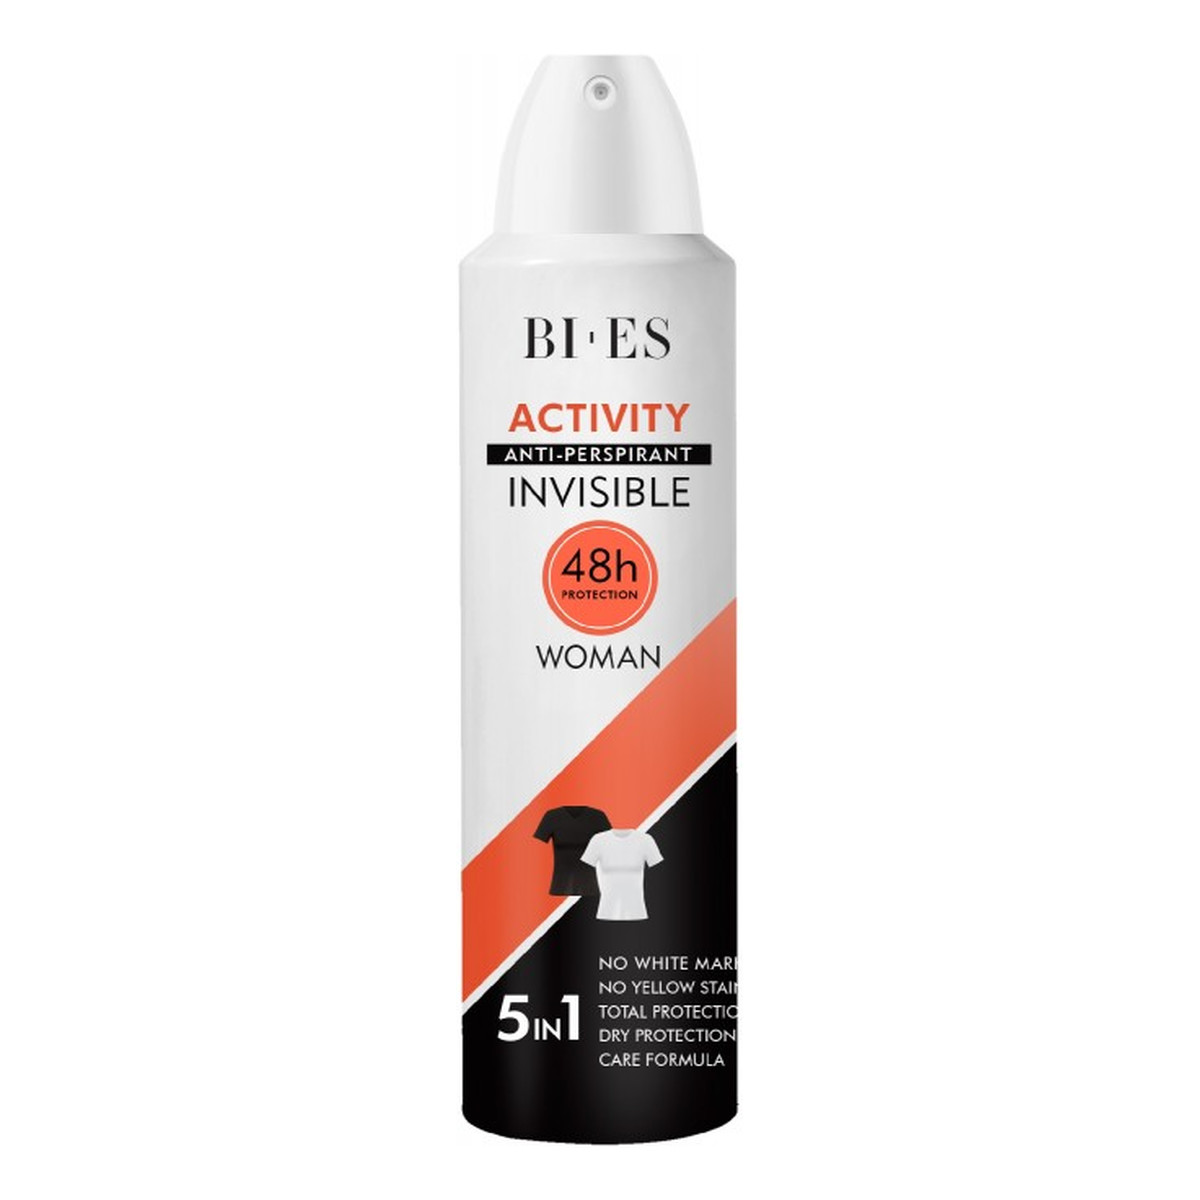 Bi-es Invisible Dezodorant anti-perspirant 5in1 Activity 150ml